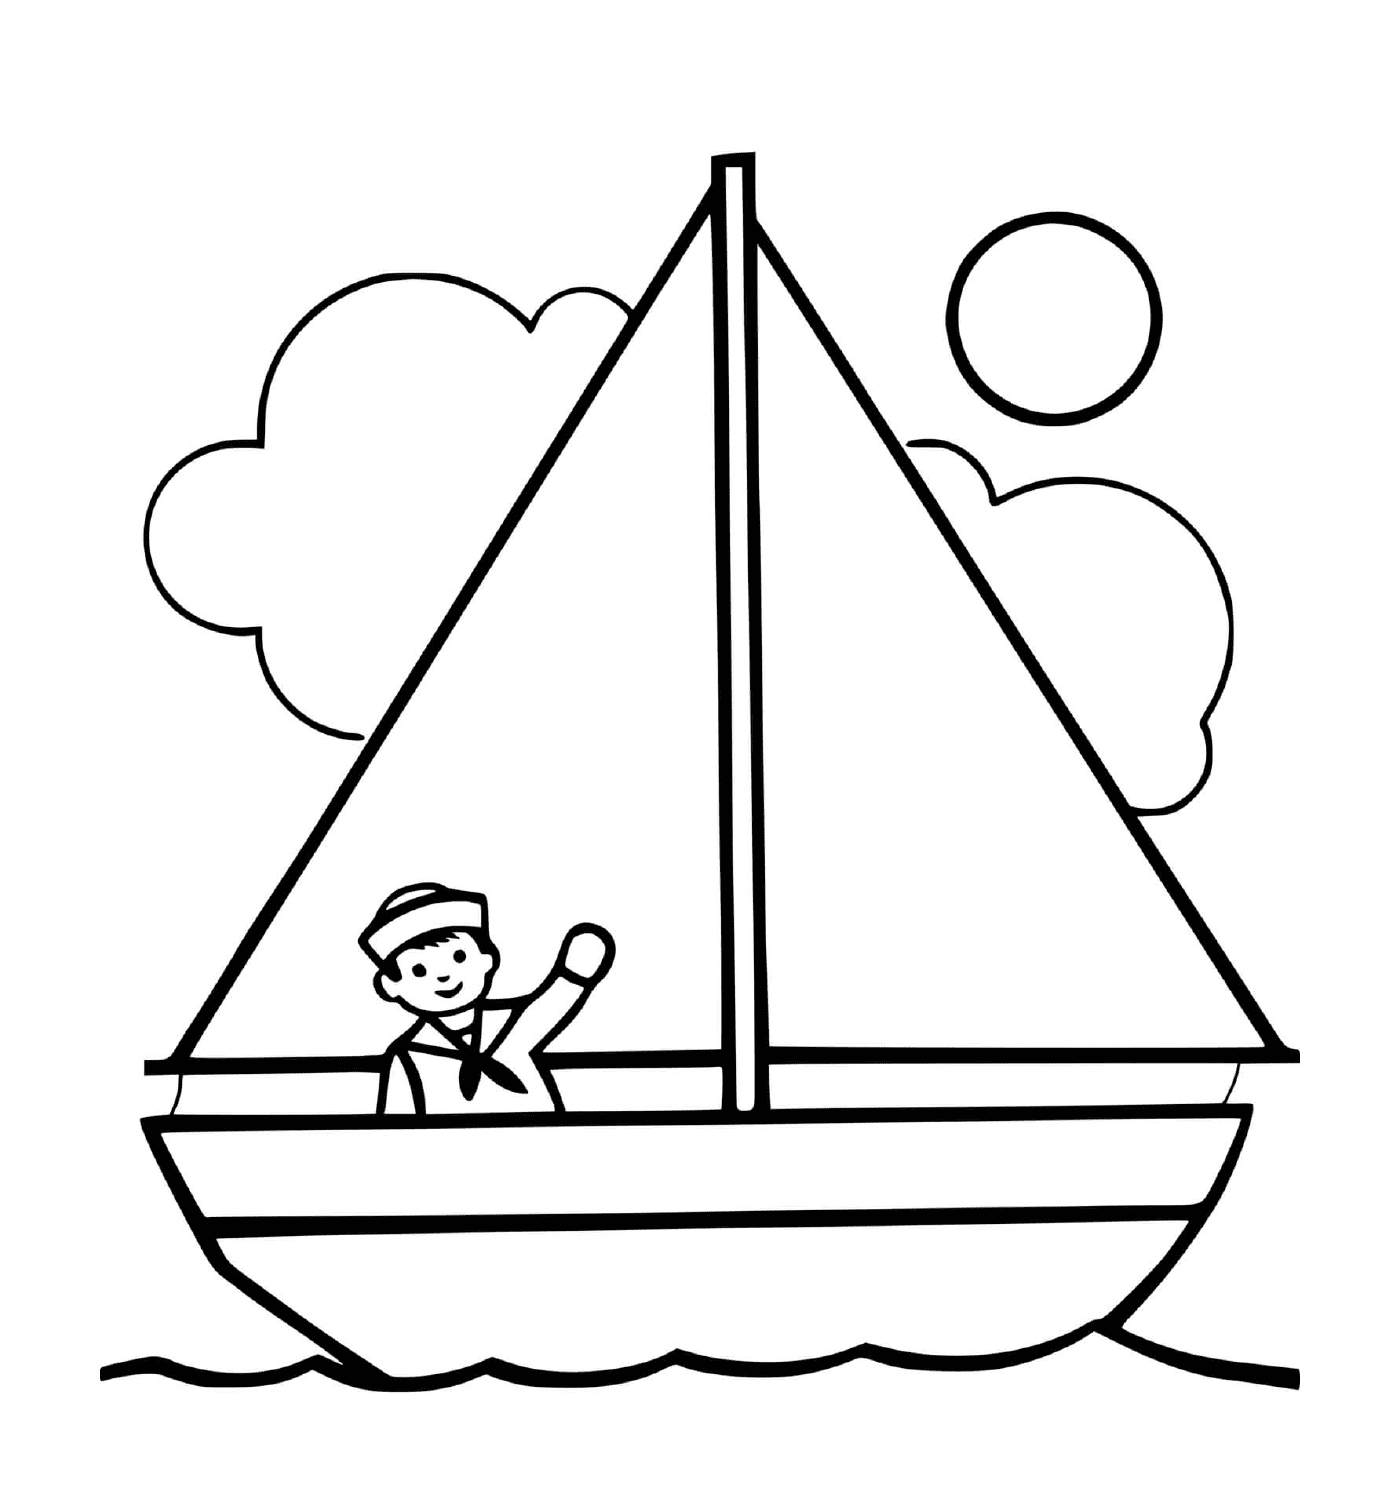  Человек в лодке с солнцем и капитаном 